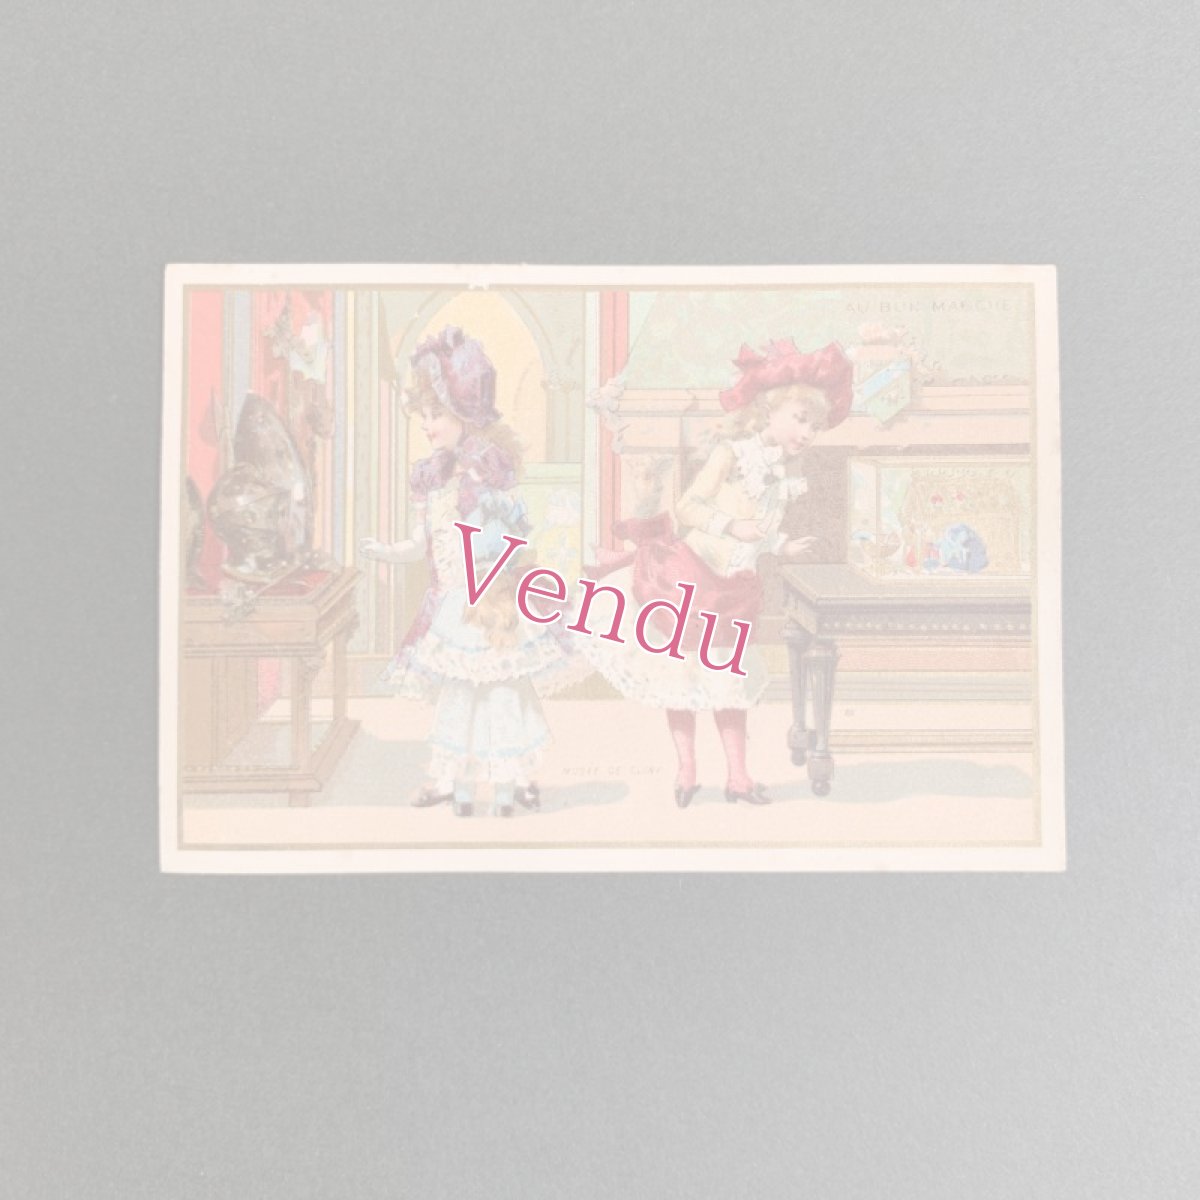 画像1: ボンマルシエトレードカード Musée de Cluny 2人の少女 (1)